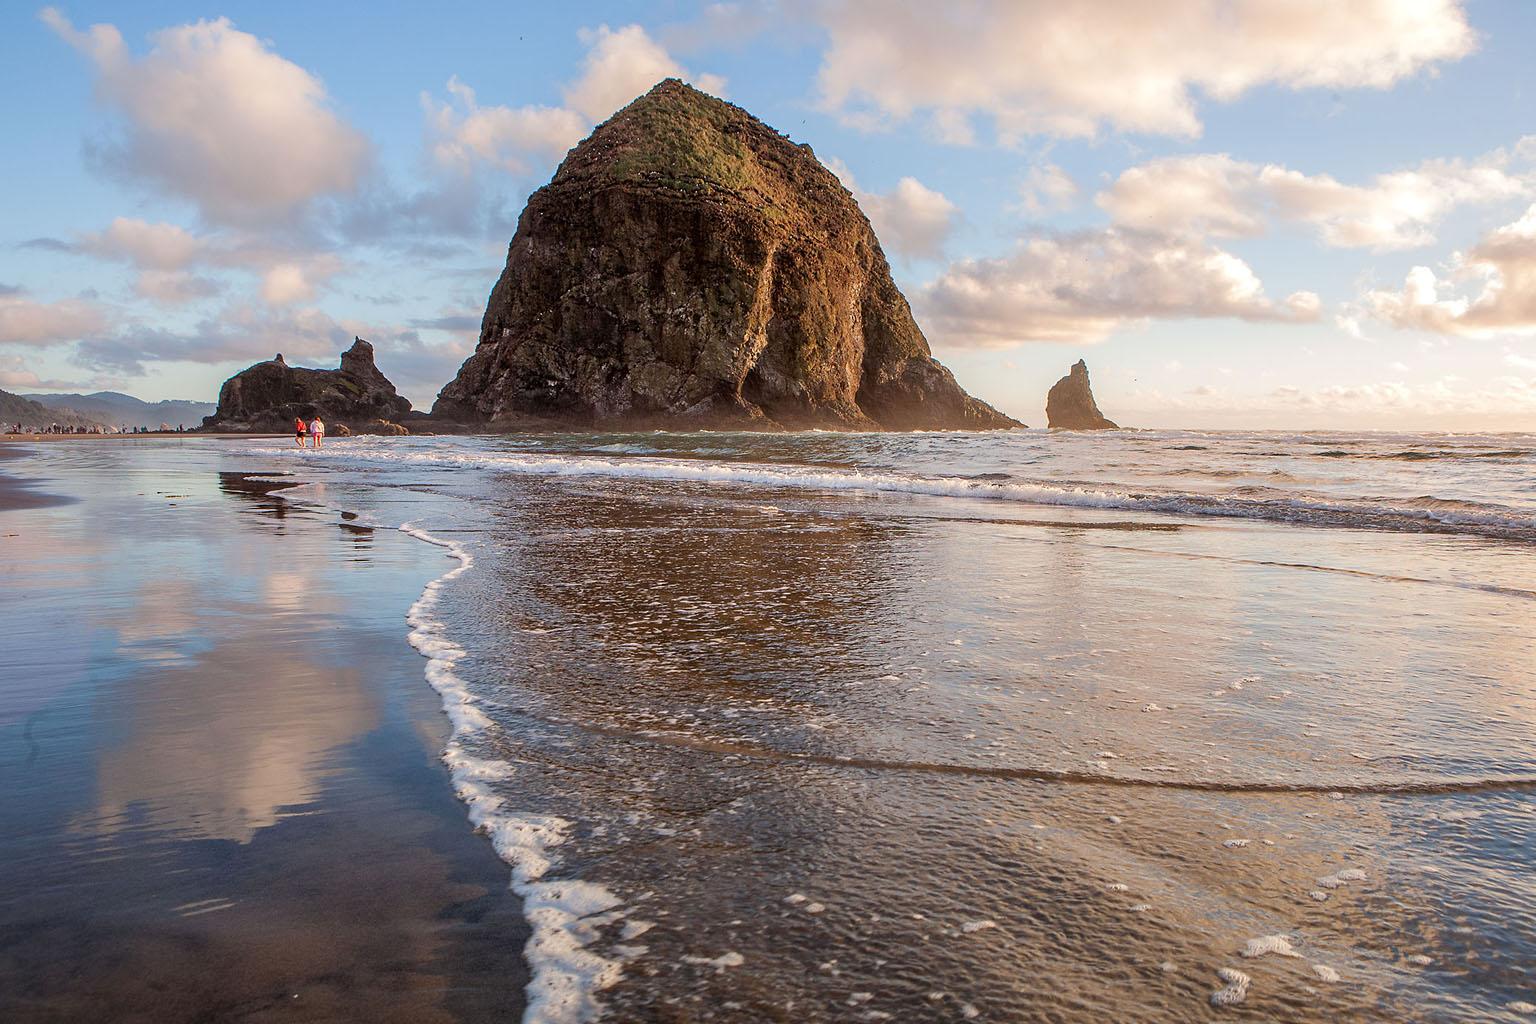 Allen Singer Color Photograph - "Oregon Coastline", Color Nature Photography, Seascape, Landscape, Pacific Ocean